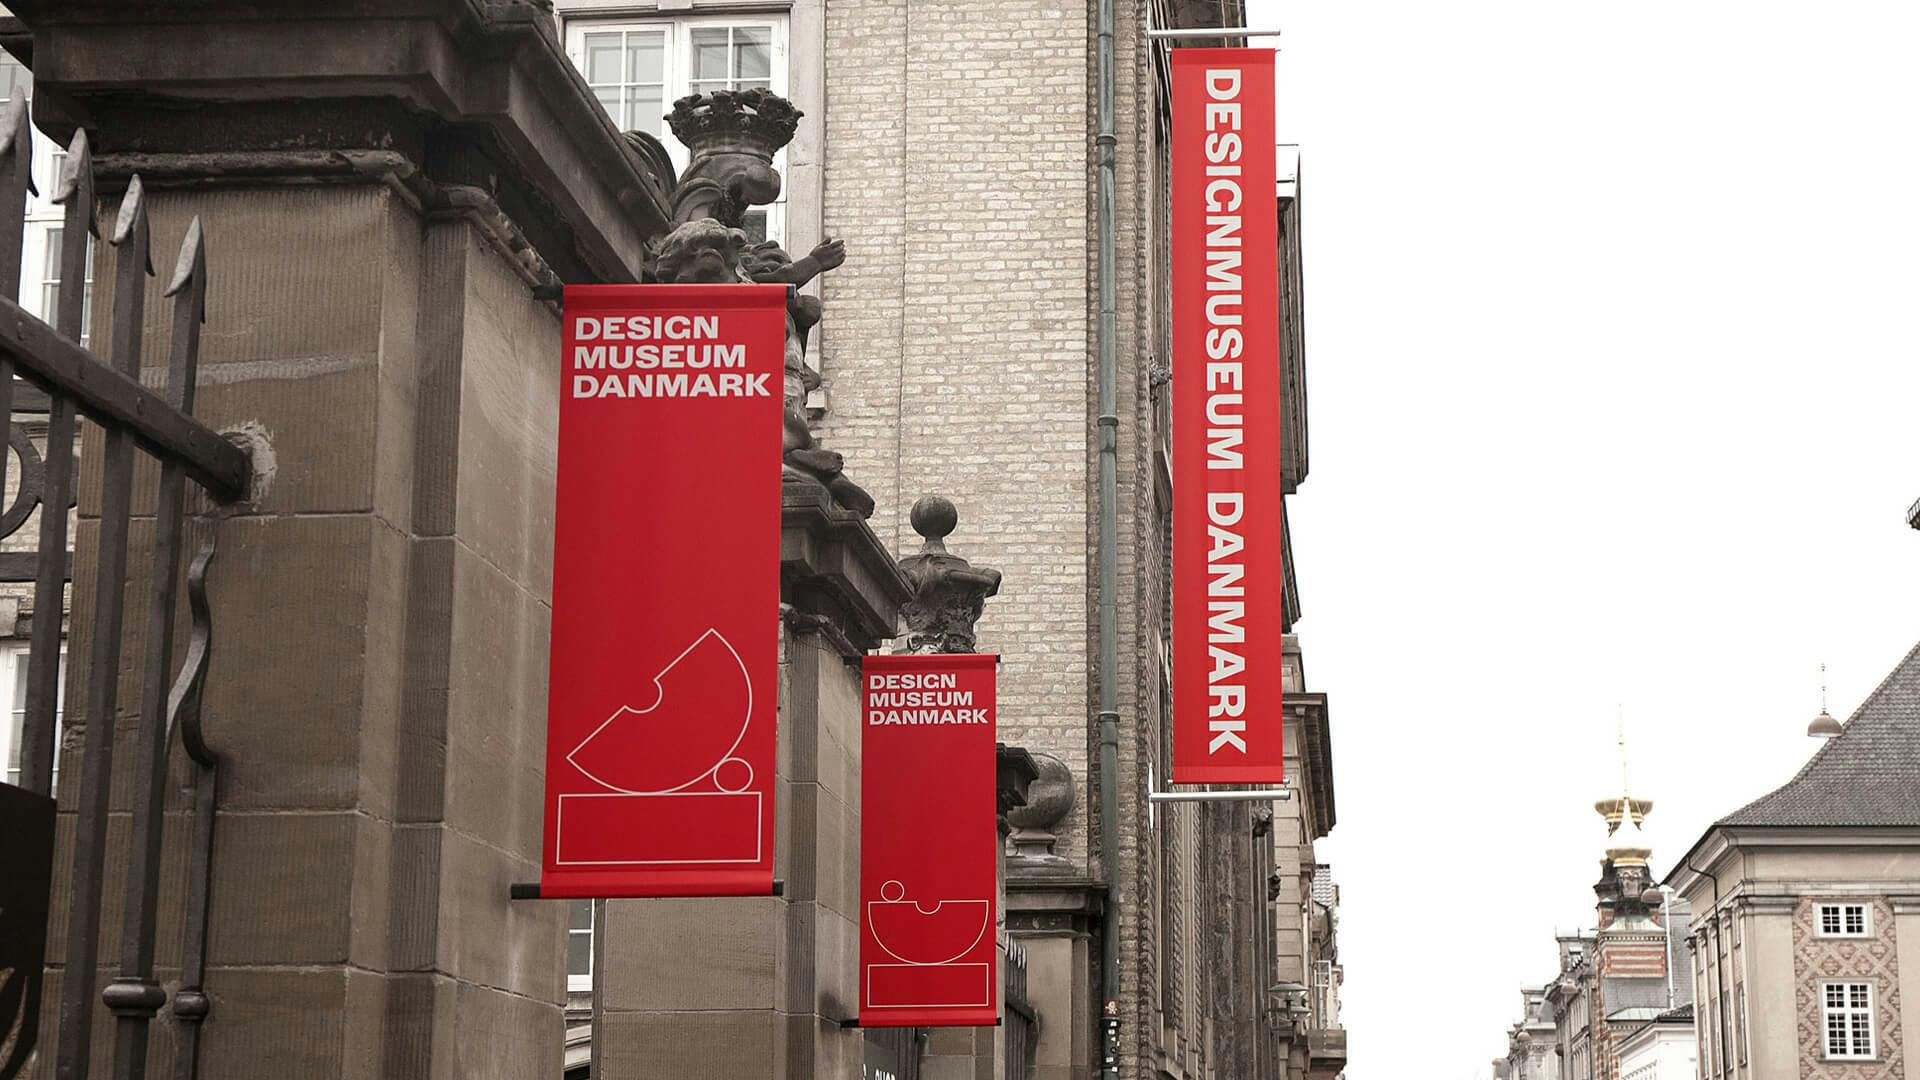 Design Museum Denmark Banner Outside